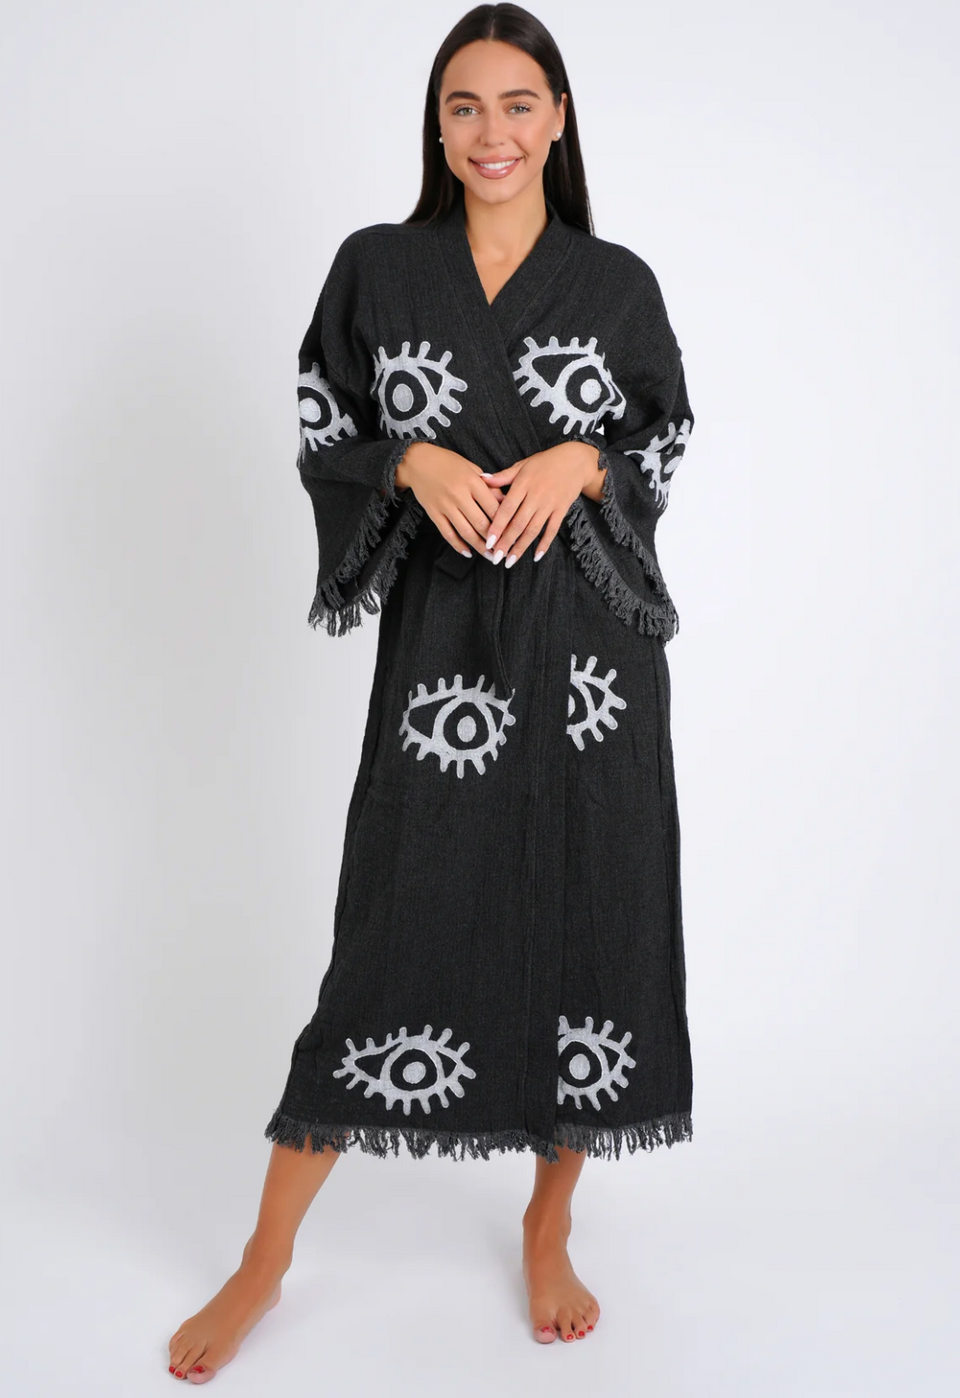 Peshtemal Black with White Evil Eye Kimono/Robe